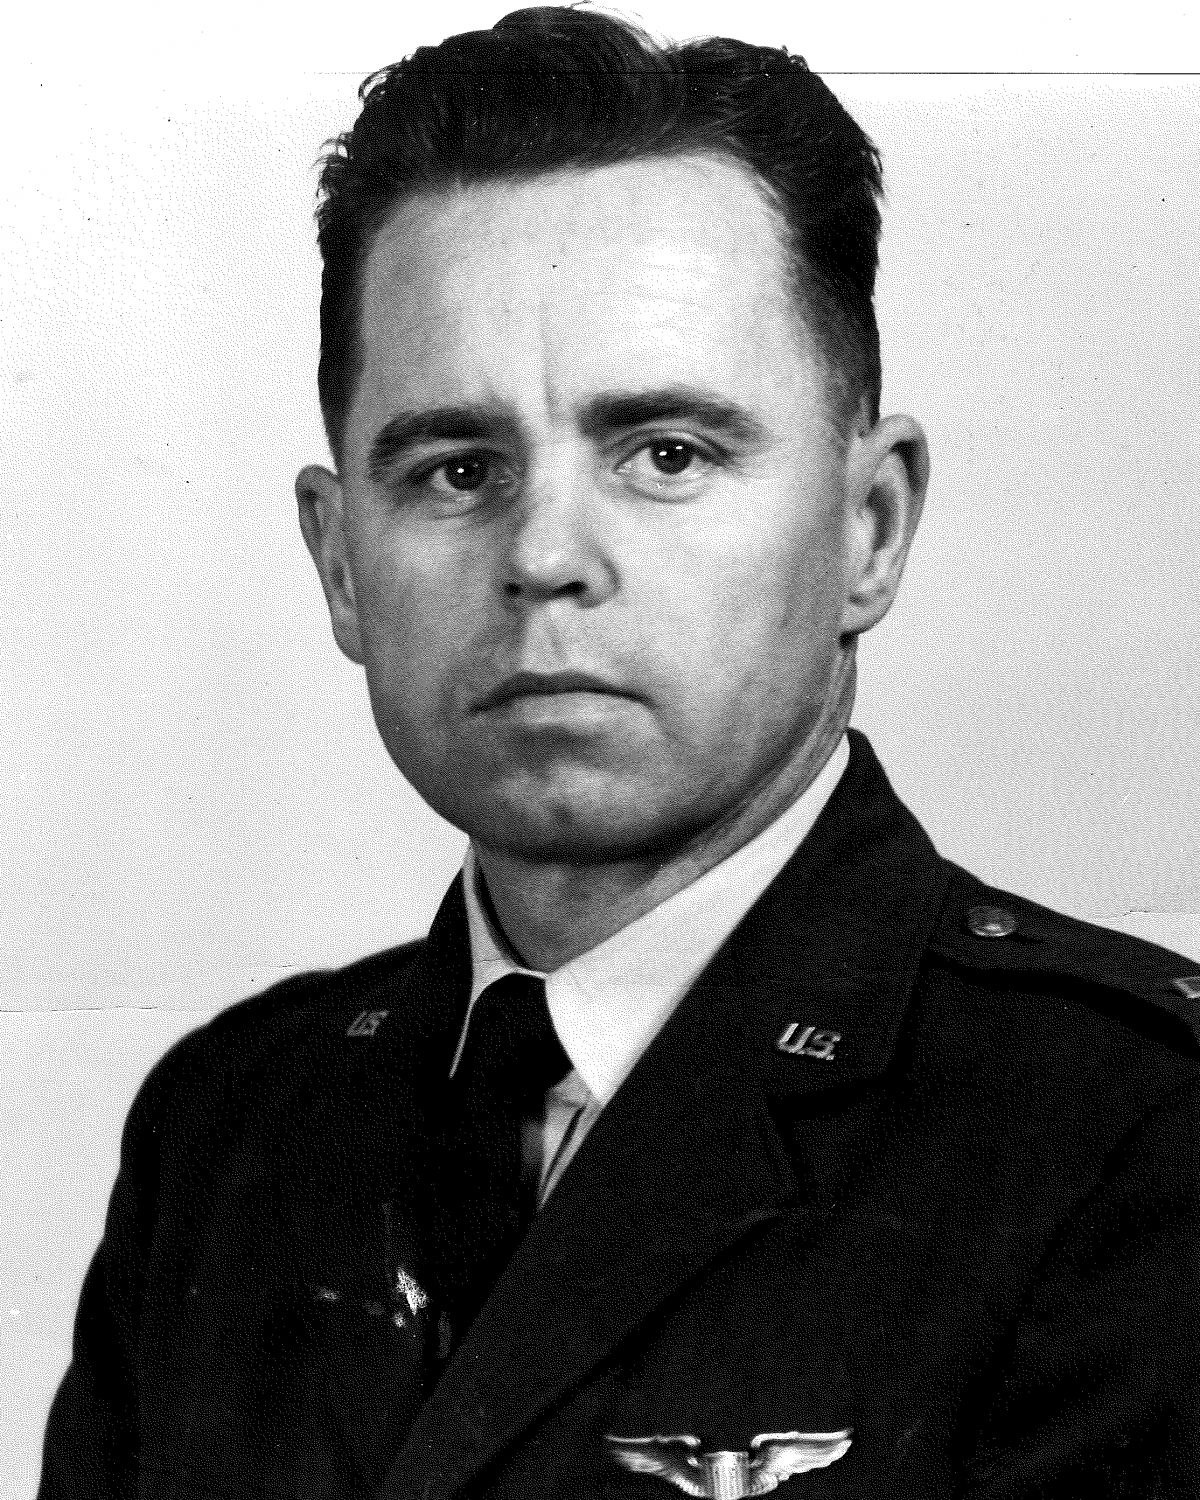 Lt. Colonel Paul Summey